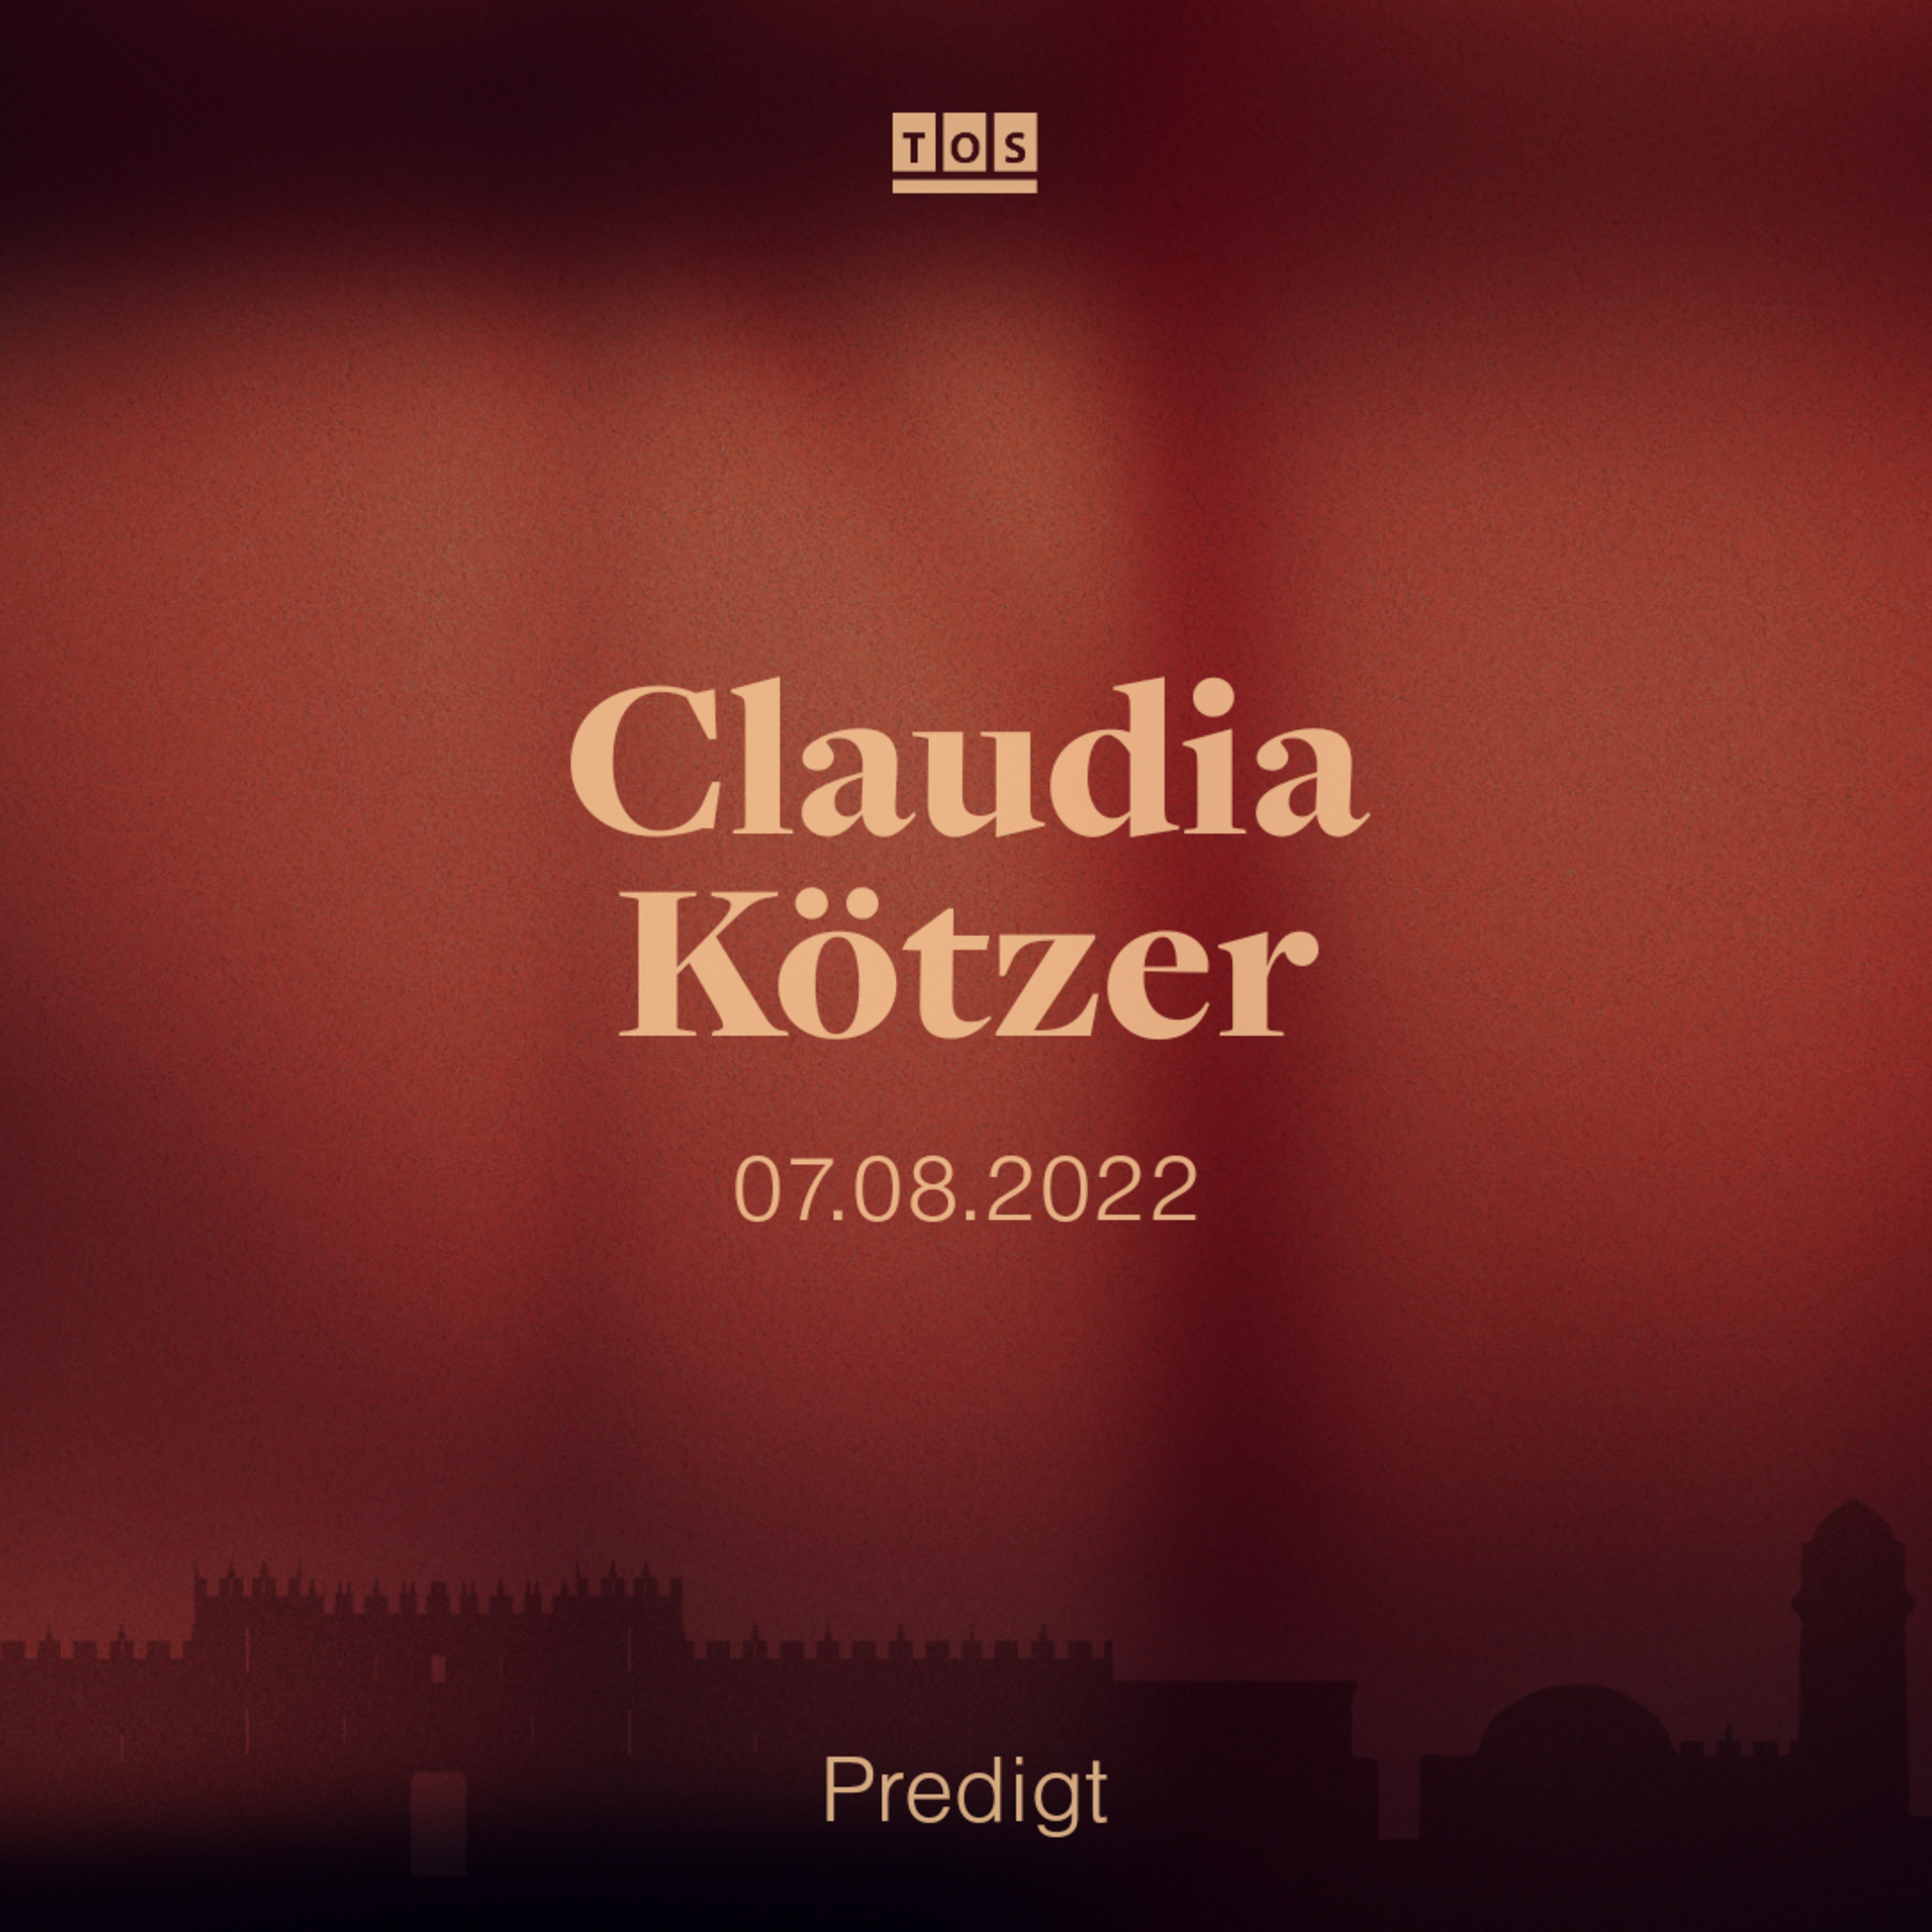 Claudia Kötzer - 07.08.2022